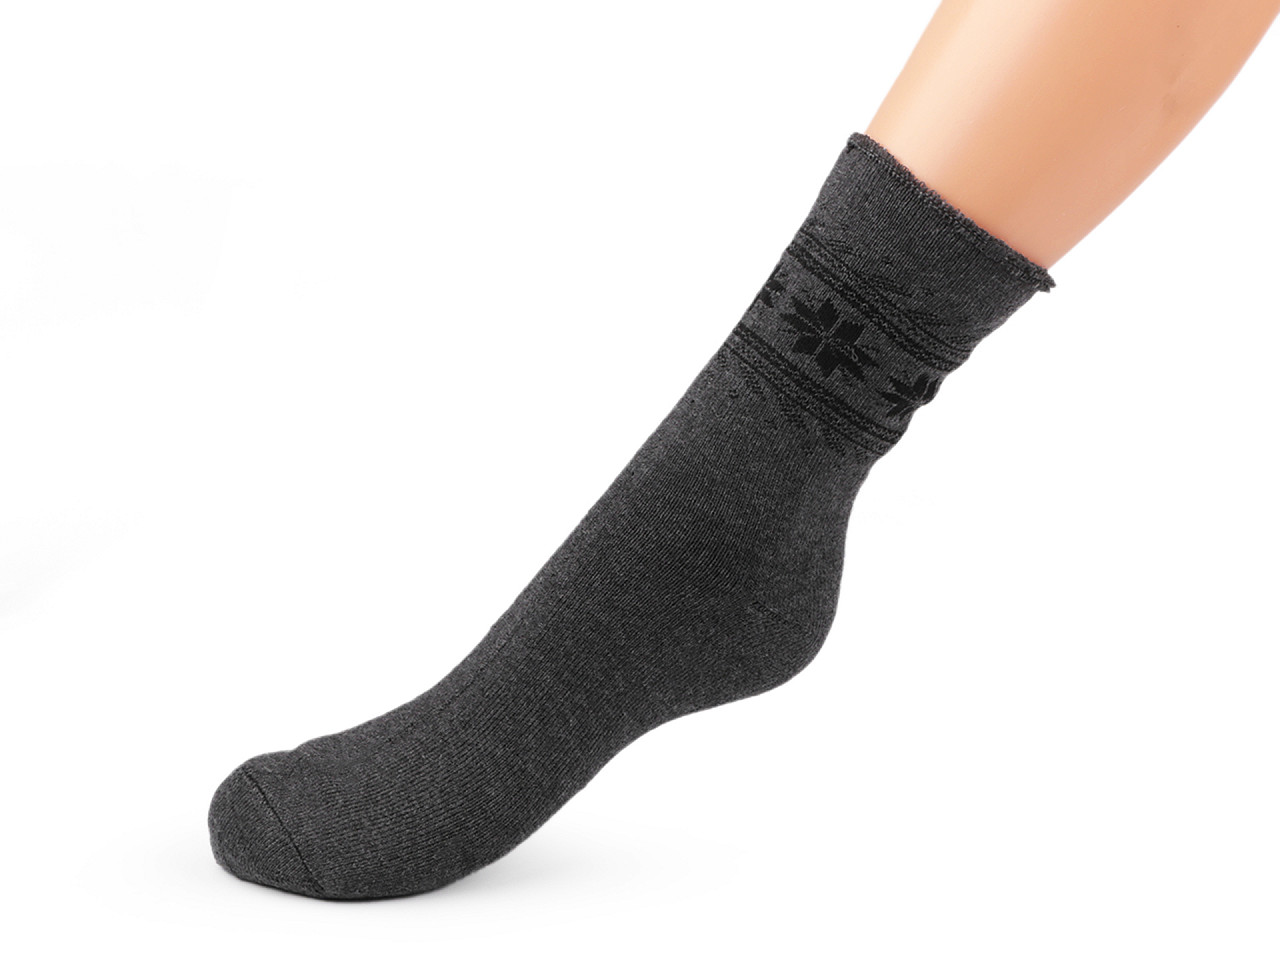 Herren Socken mit Gesundheitsbund Thermo, Mix zufällig, 2 Paar